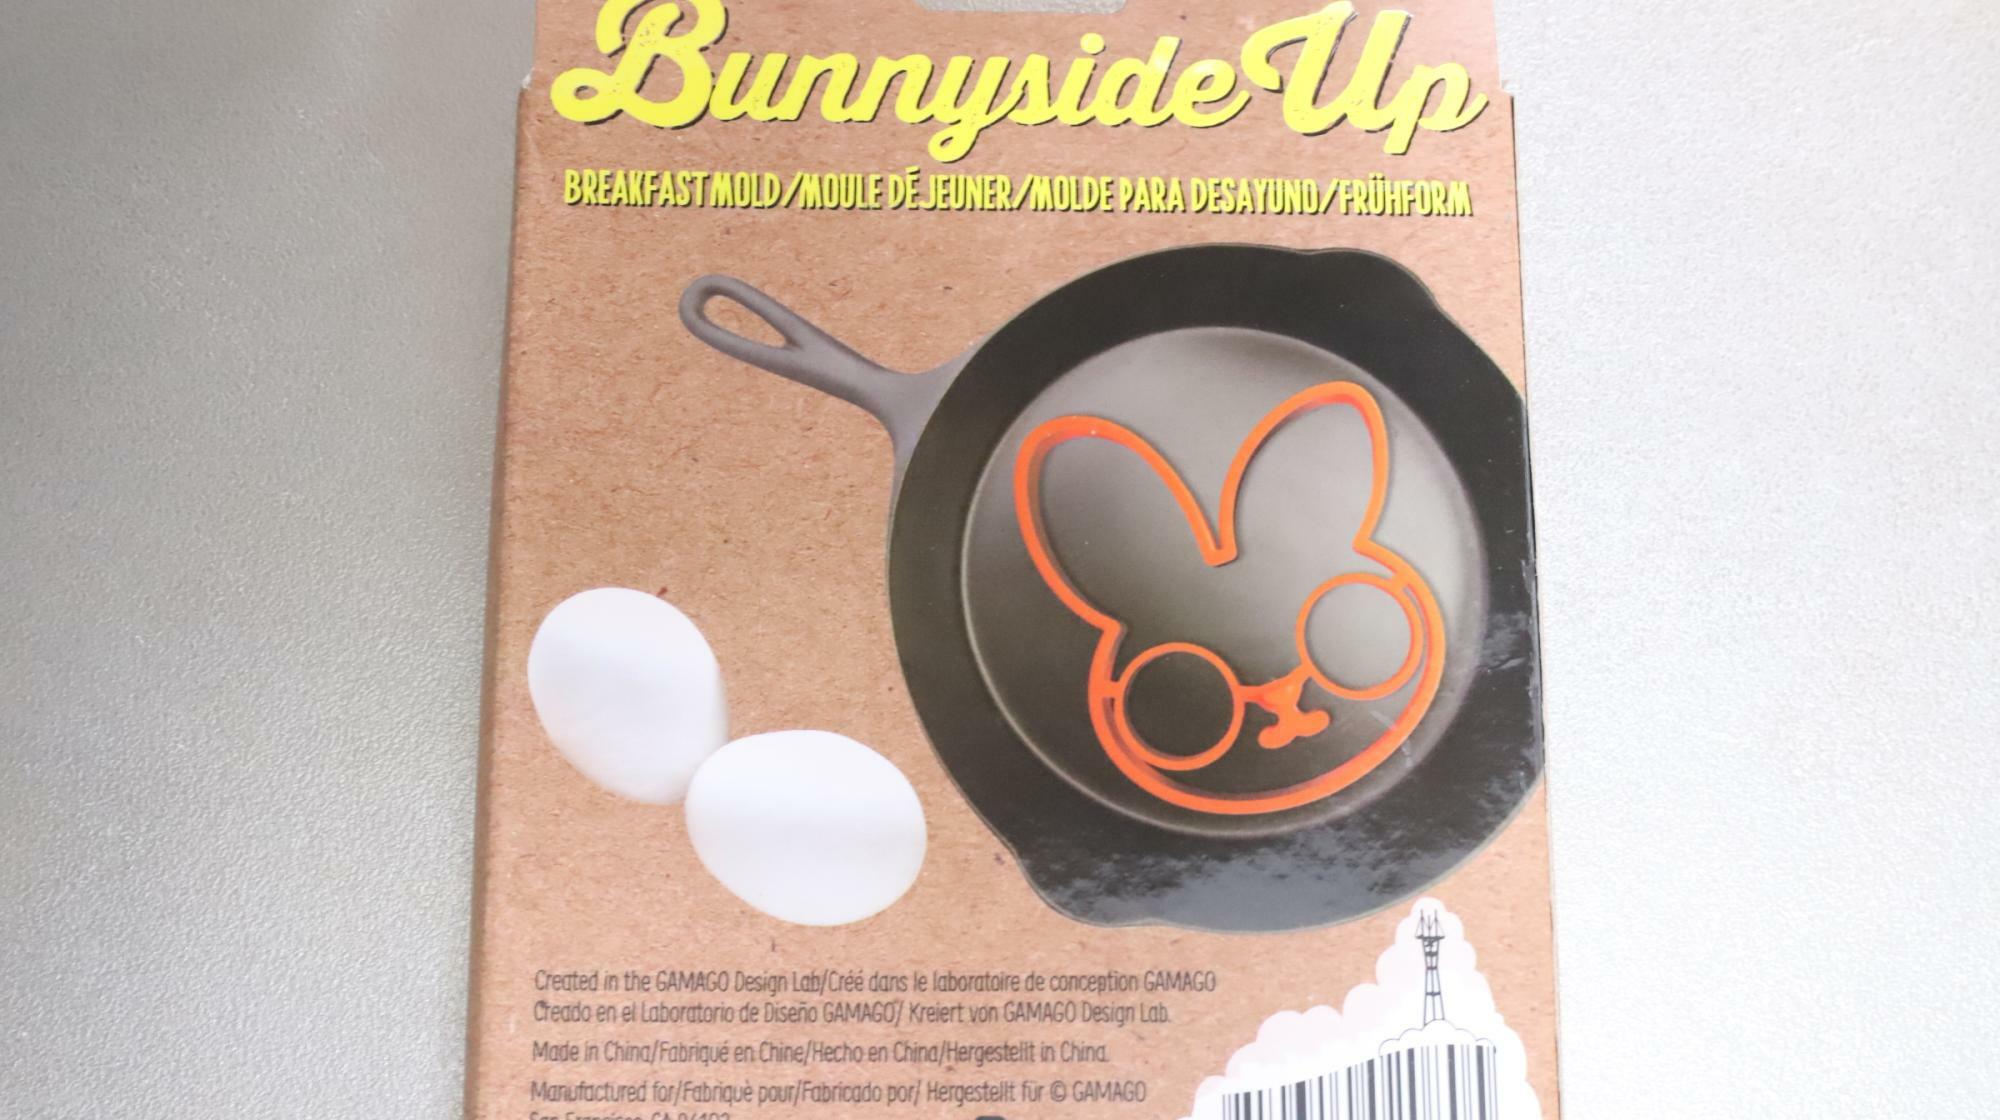 海外製のシリコンエッグモールド「Bunnyside Up Breakfast Mold」パッケージ裏面